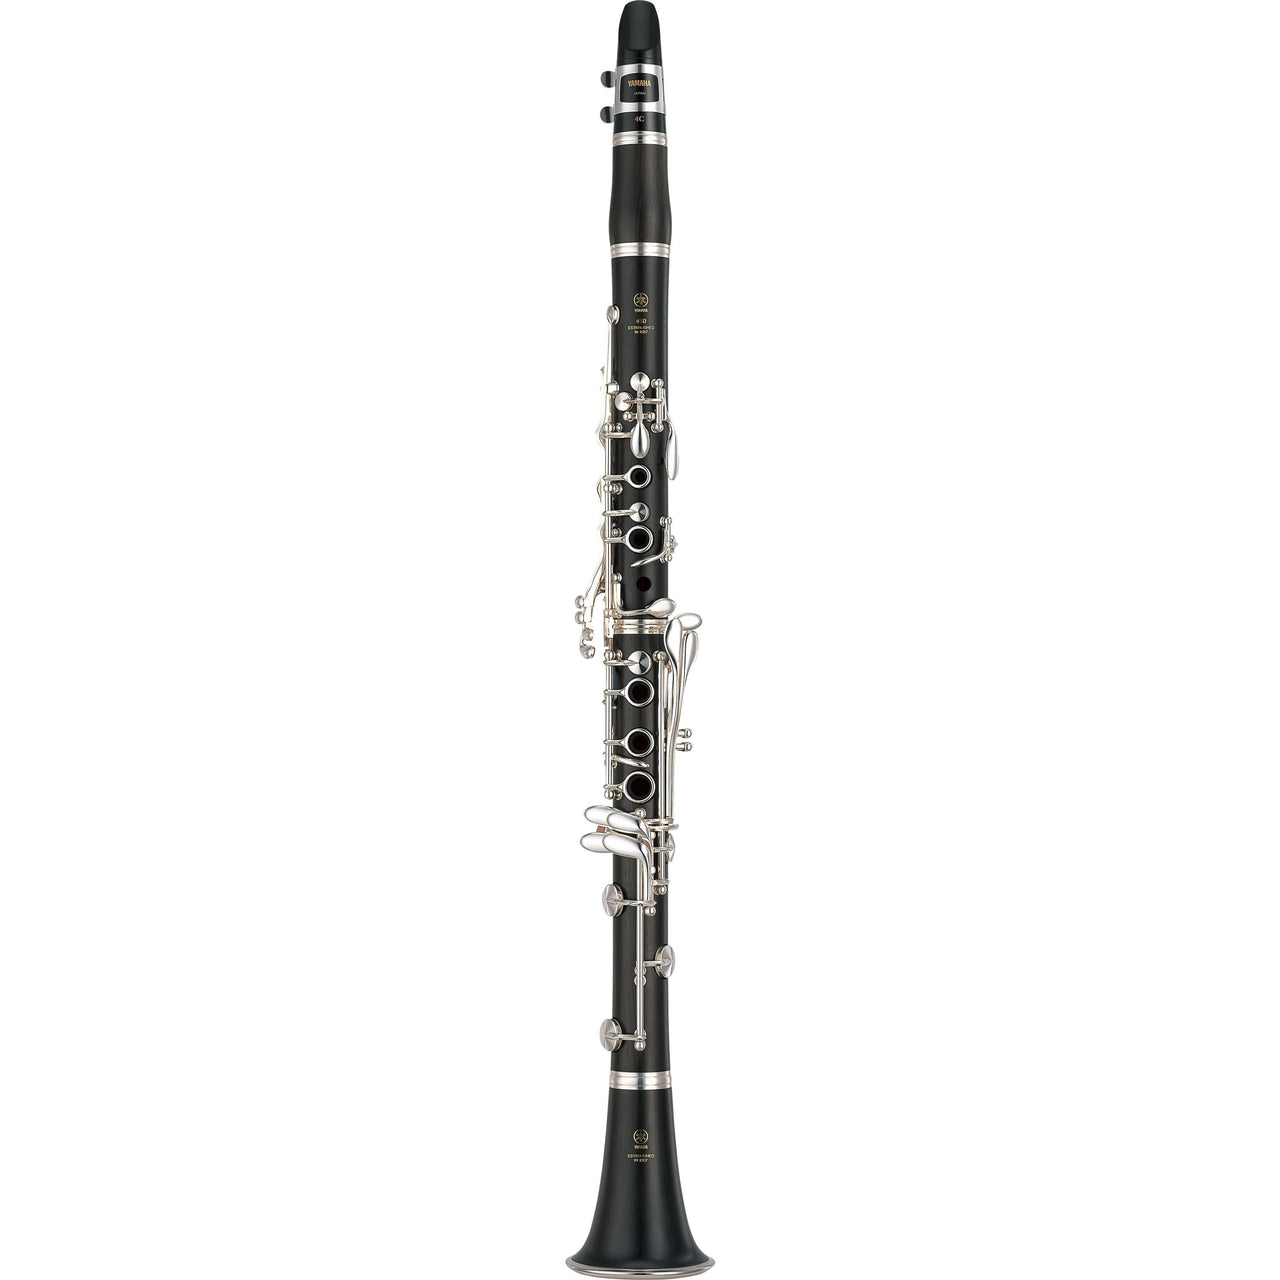 clarinete yamaha intermedio de granadilla en bb duet, ycl450m